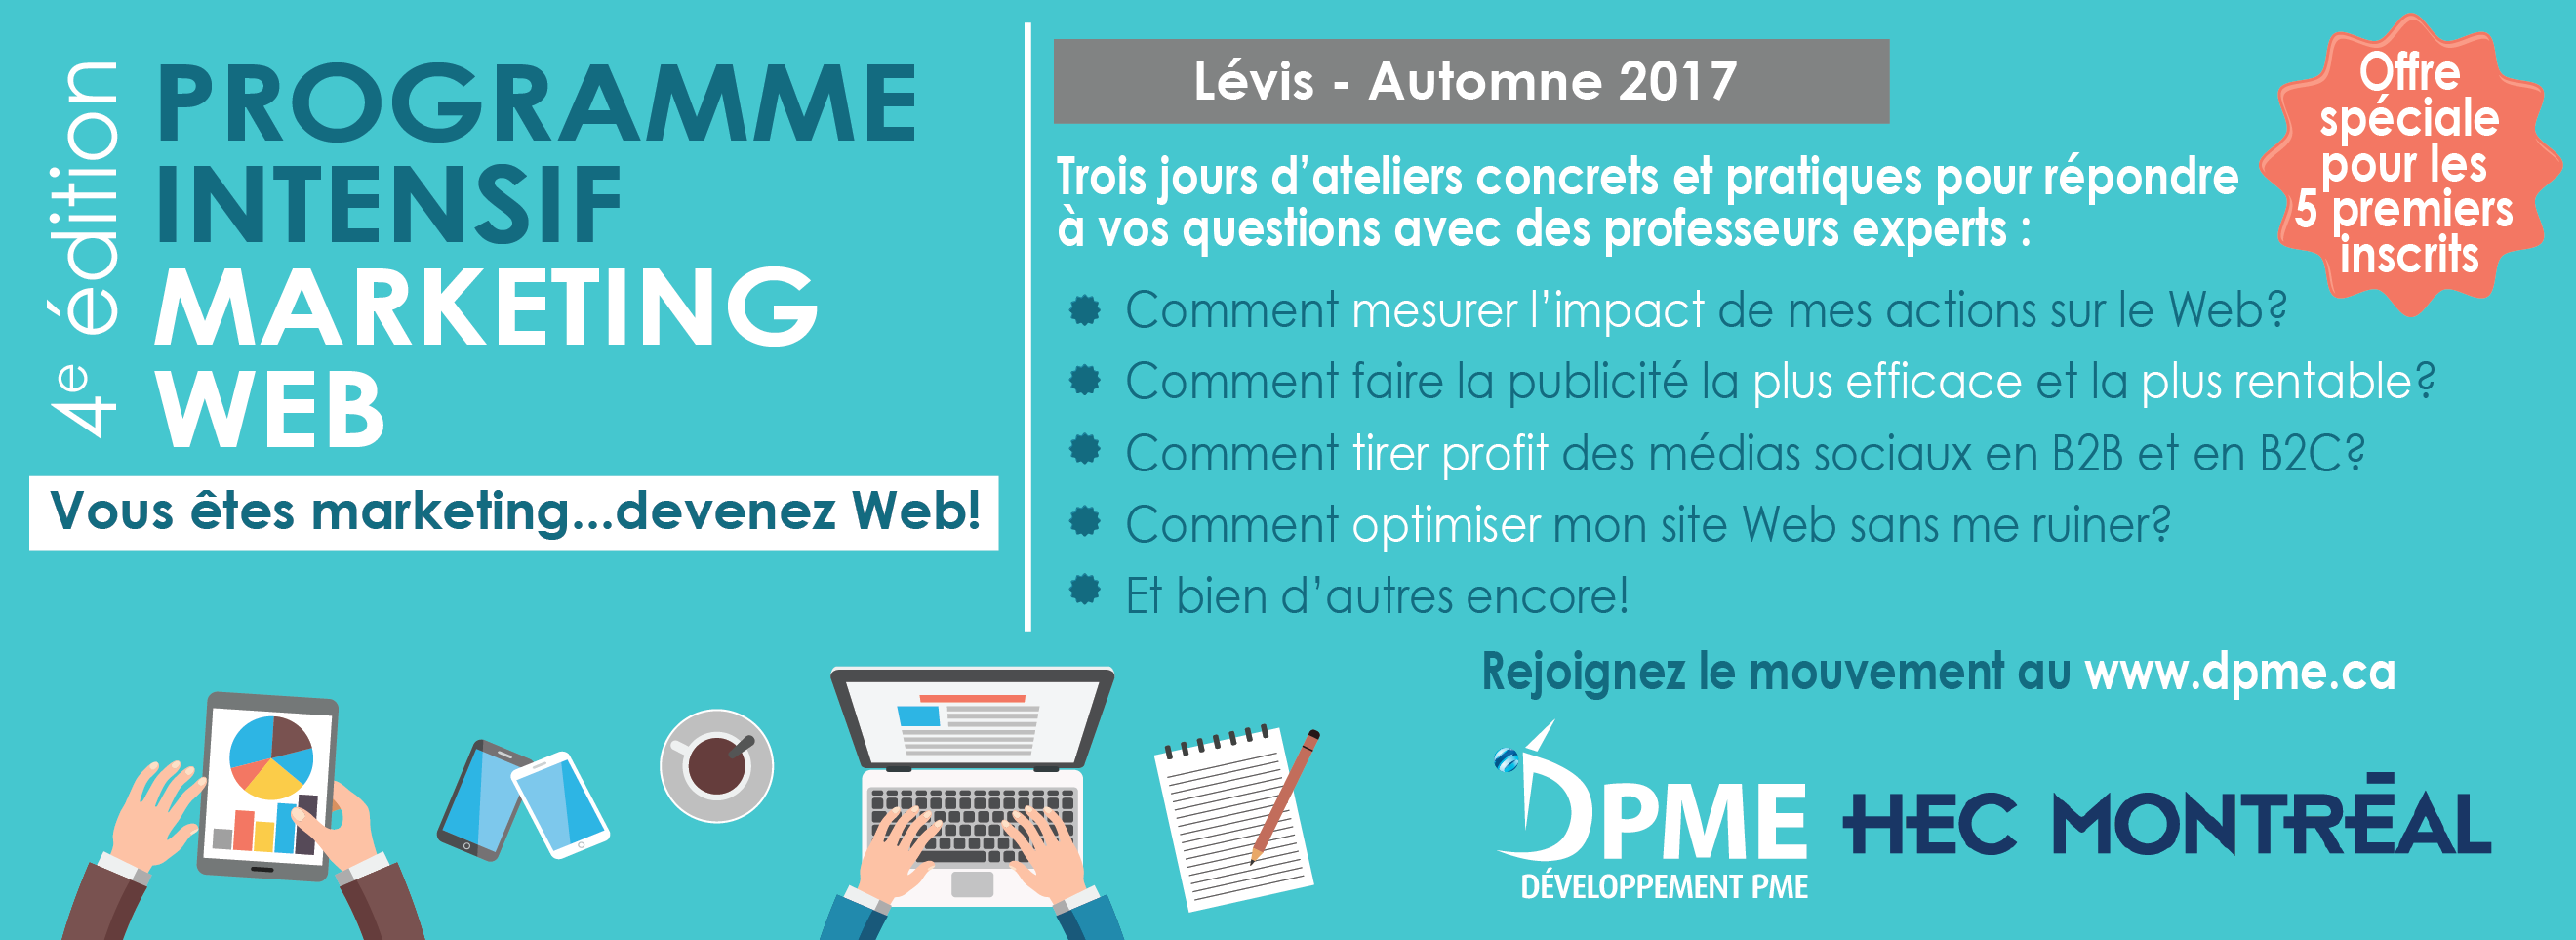 Programme intensif marketing Web offert par la DPME et HEC Montréal